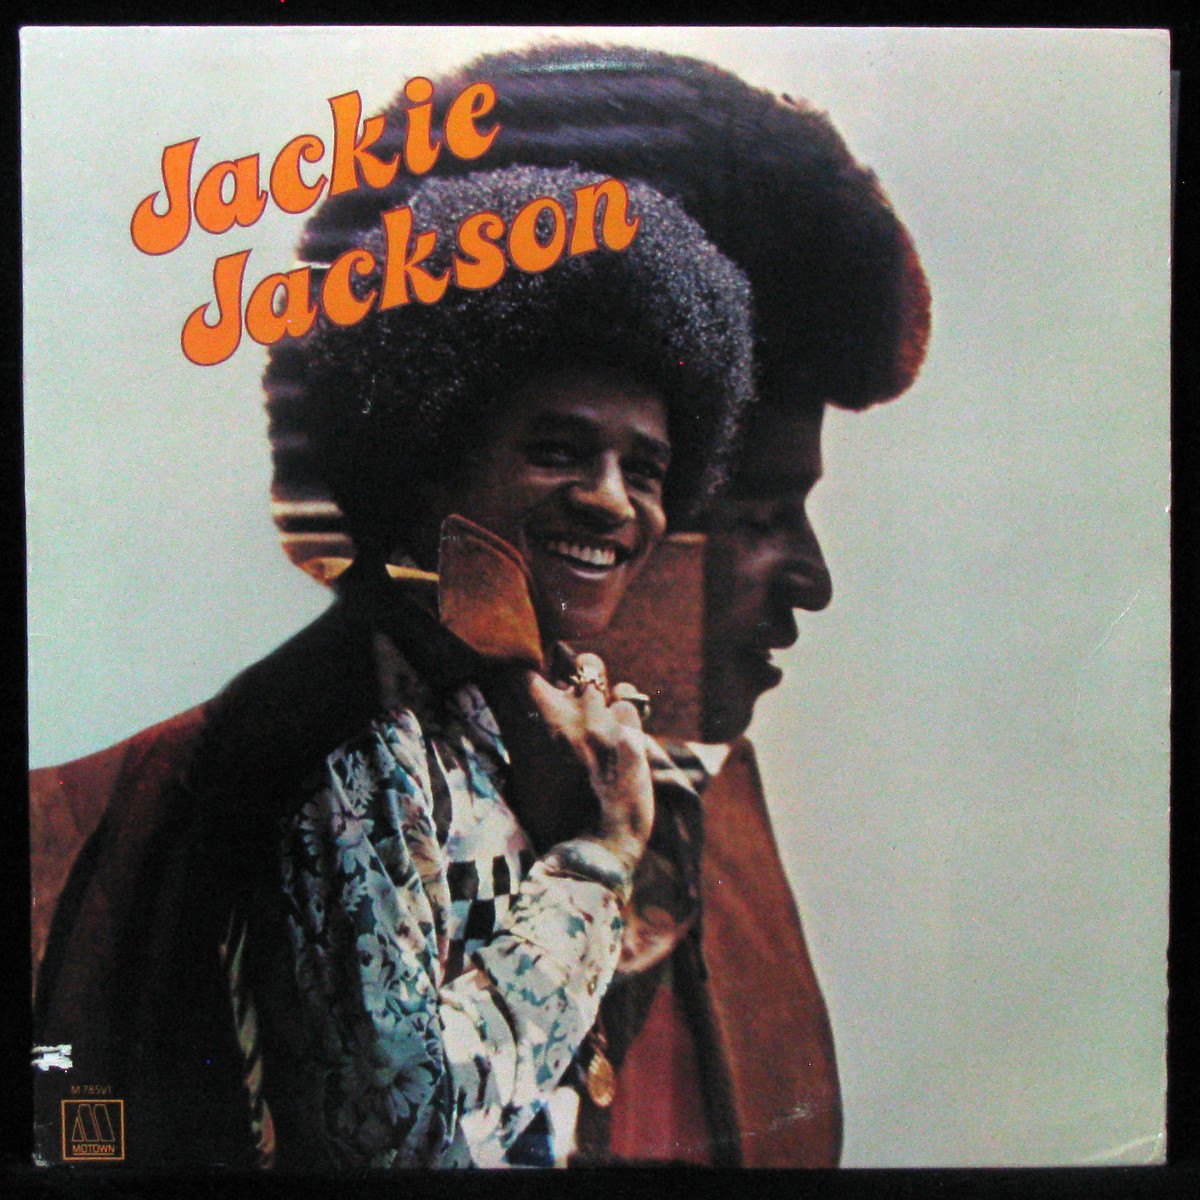 Jackie Jackson (1973)